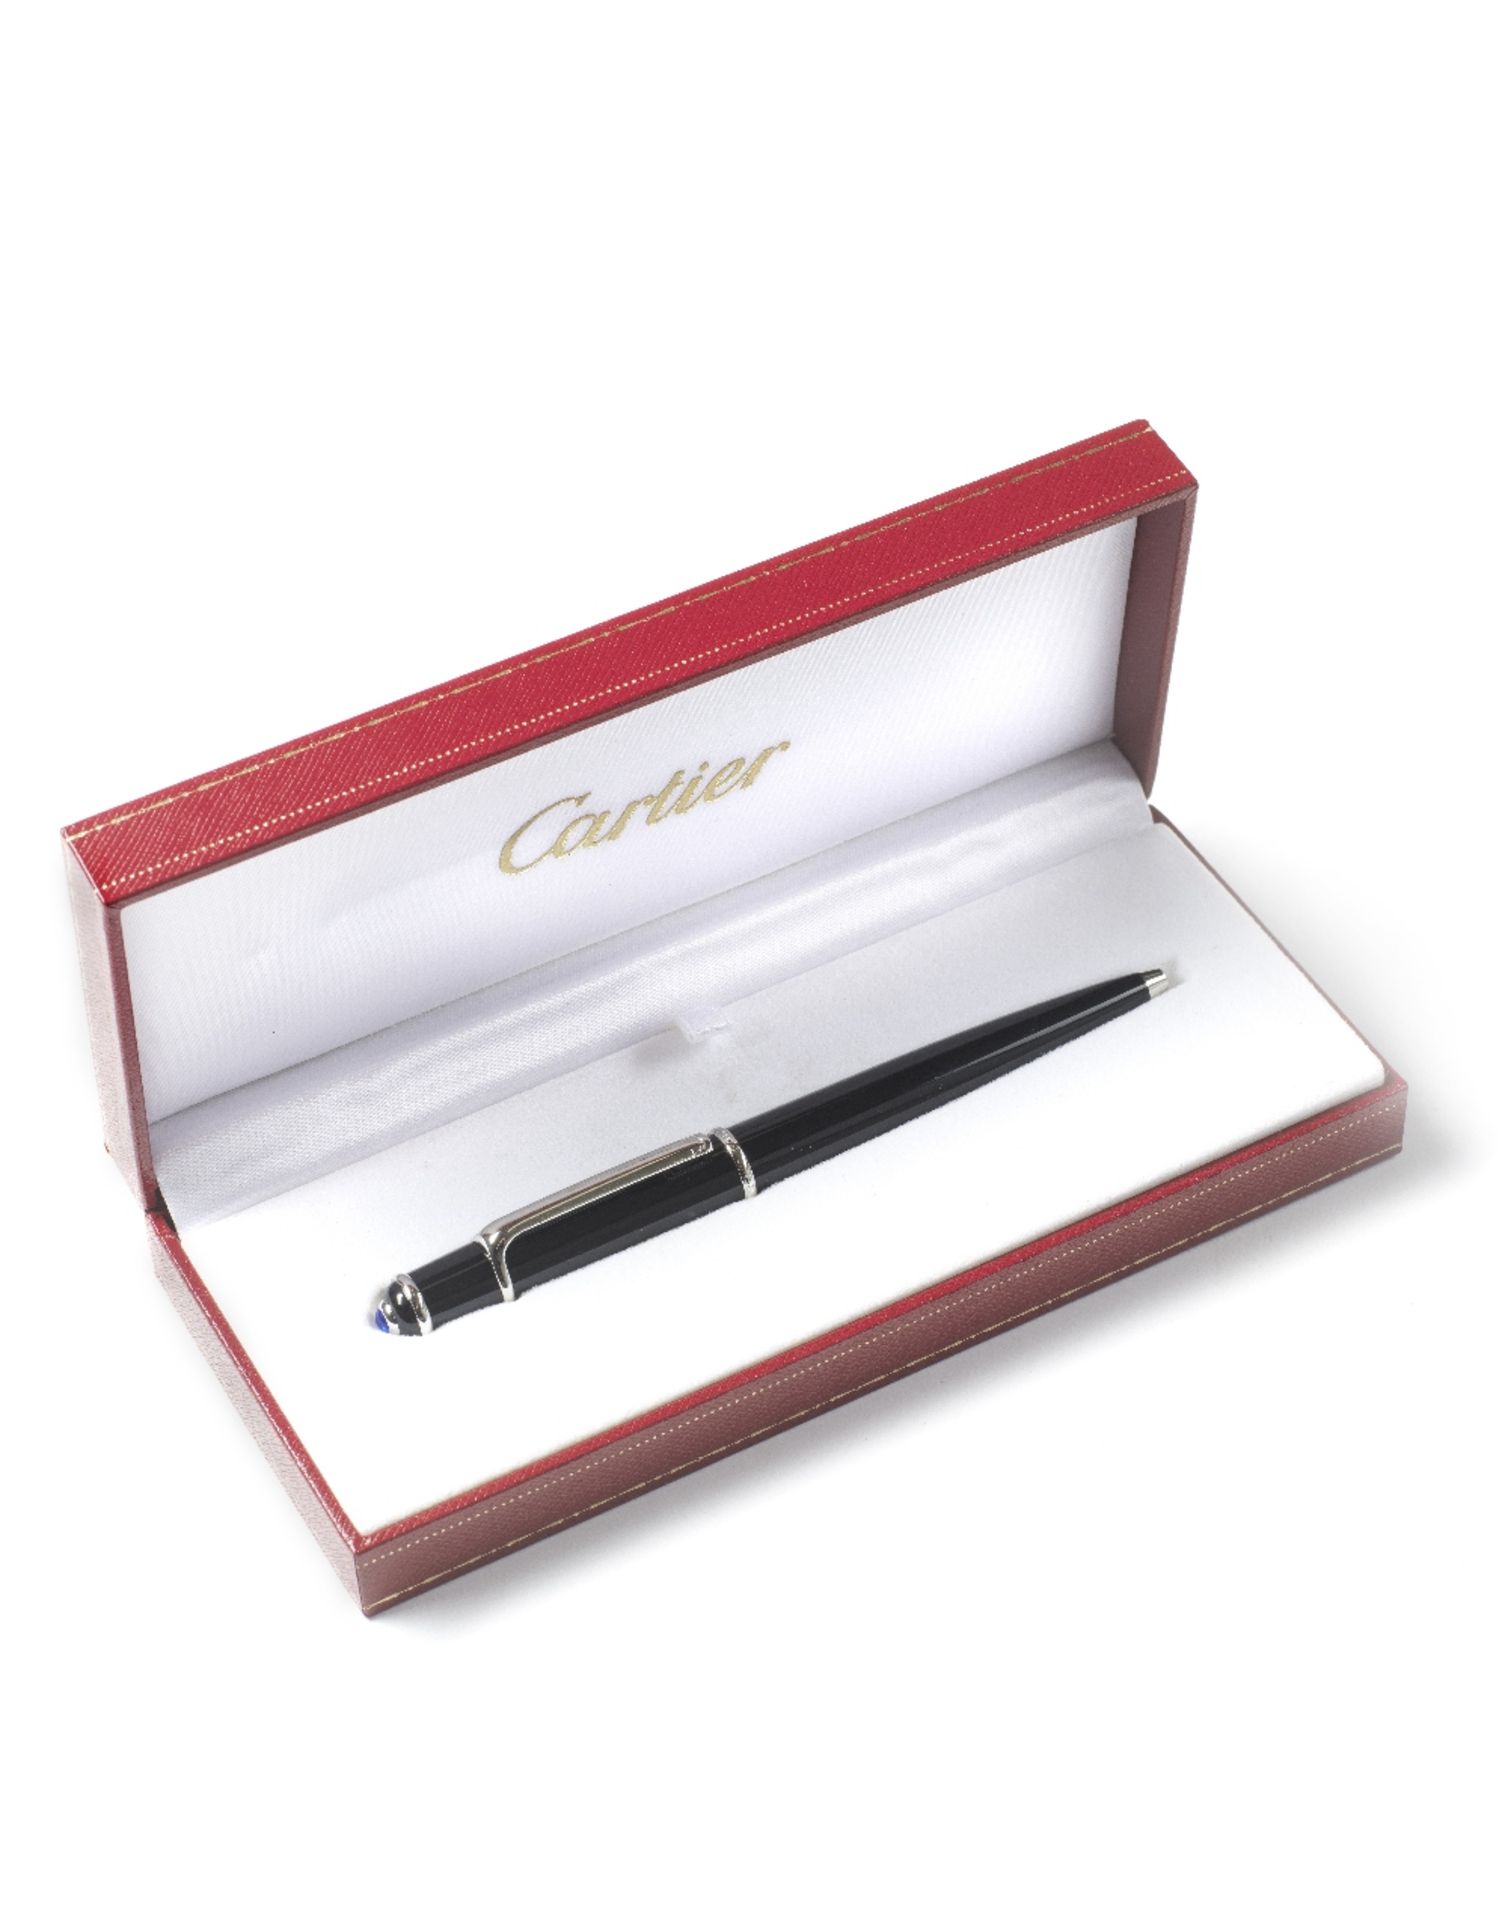 A Cartier ballpoint pen